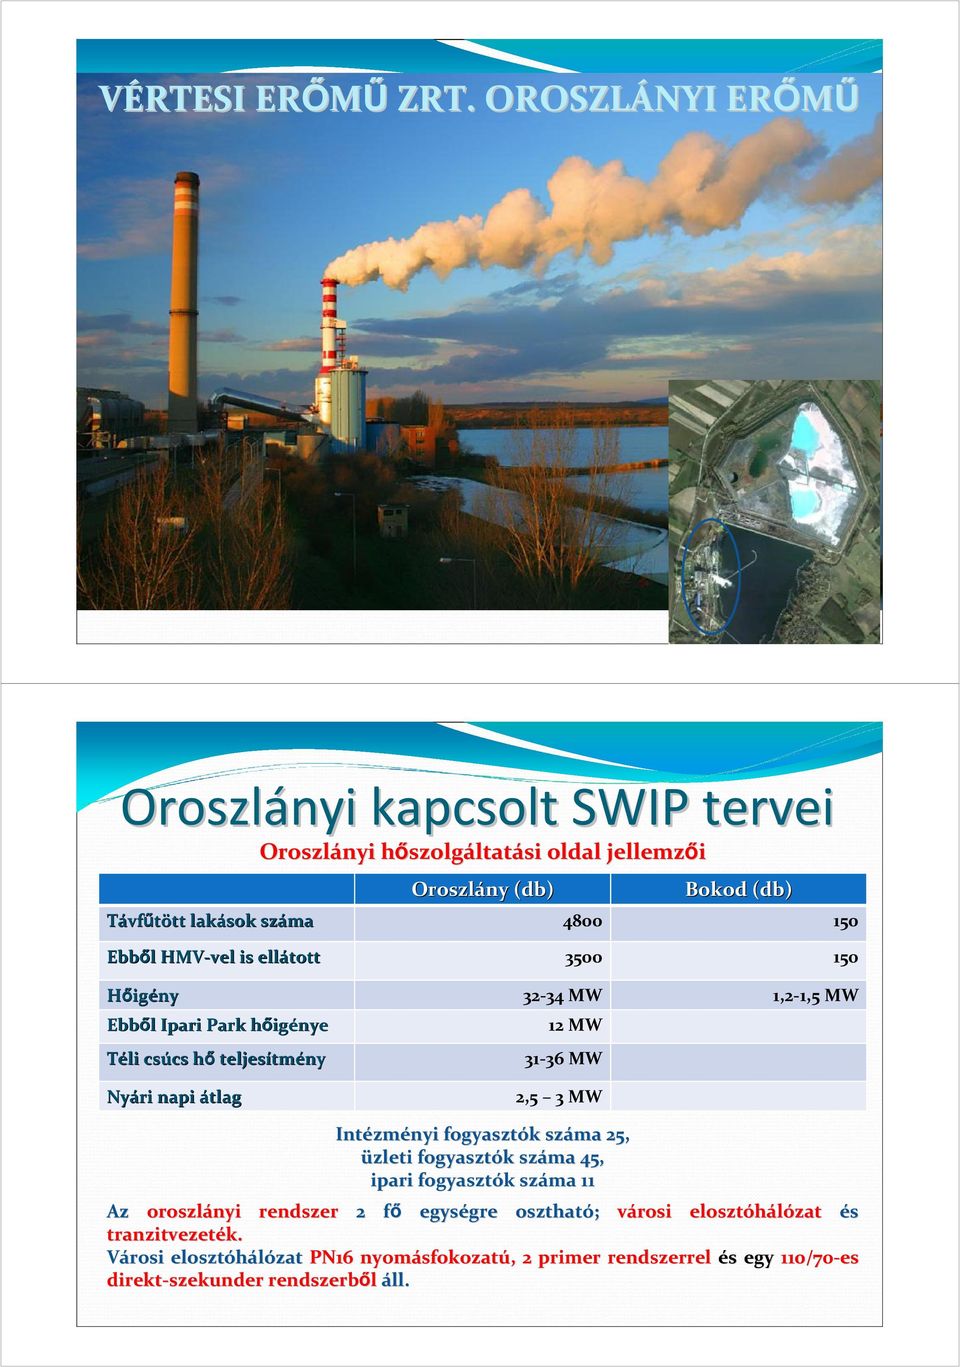 Park hőigh igénye Téli csúcs hőh teljesítm tmény Oroszlányi hőszolgh szolgáltatási oldal jellemzői 12 MW 31-36 MW Nyári napi átlag 2,5 3 MW Intézm zményi